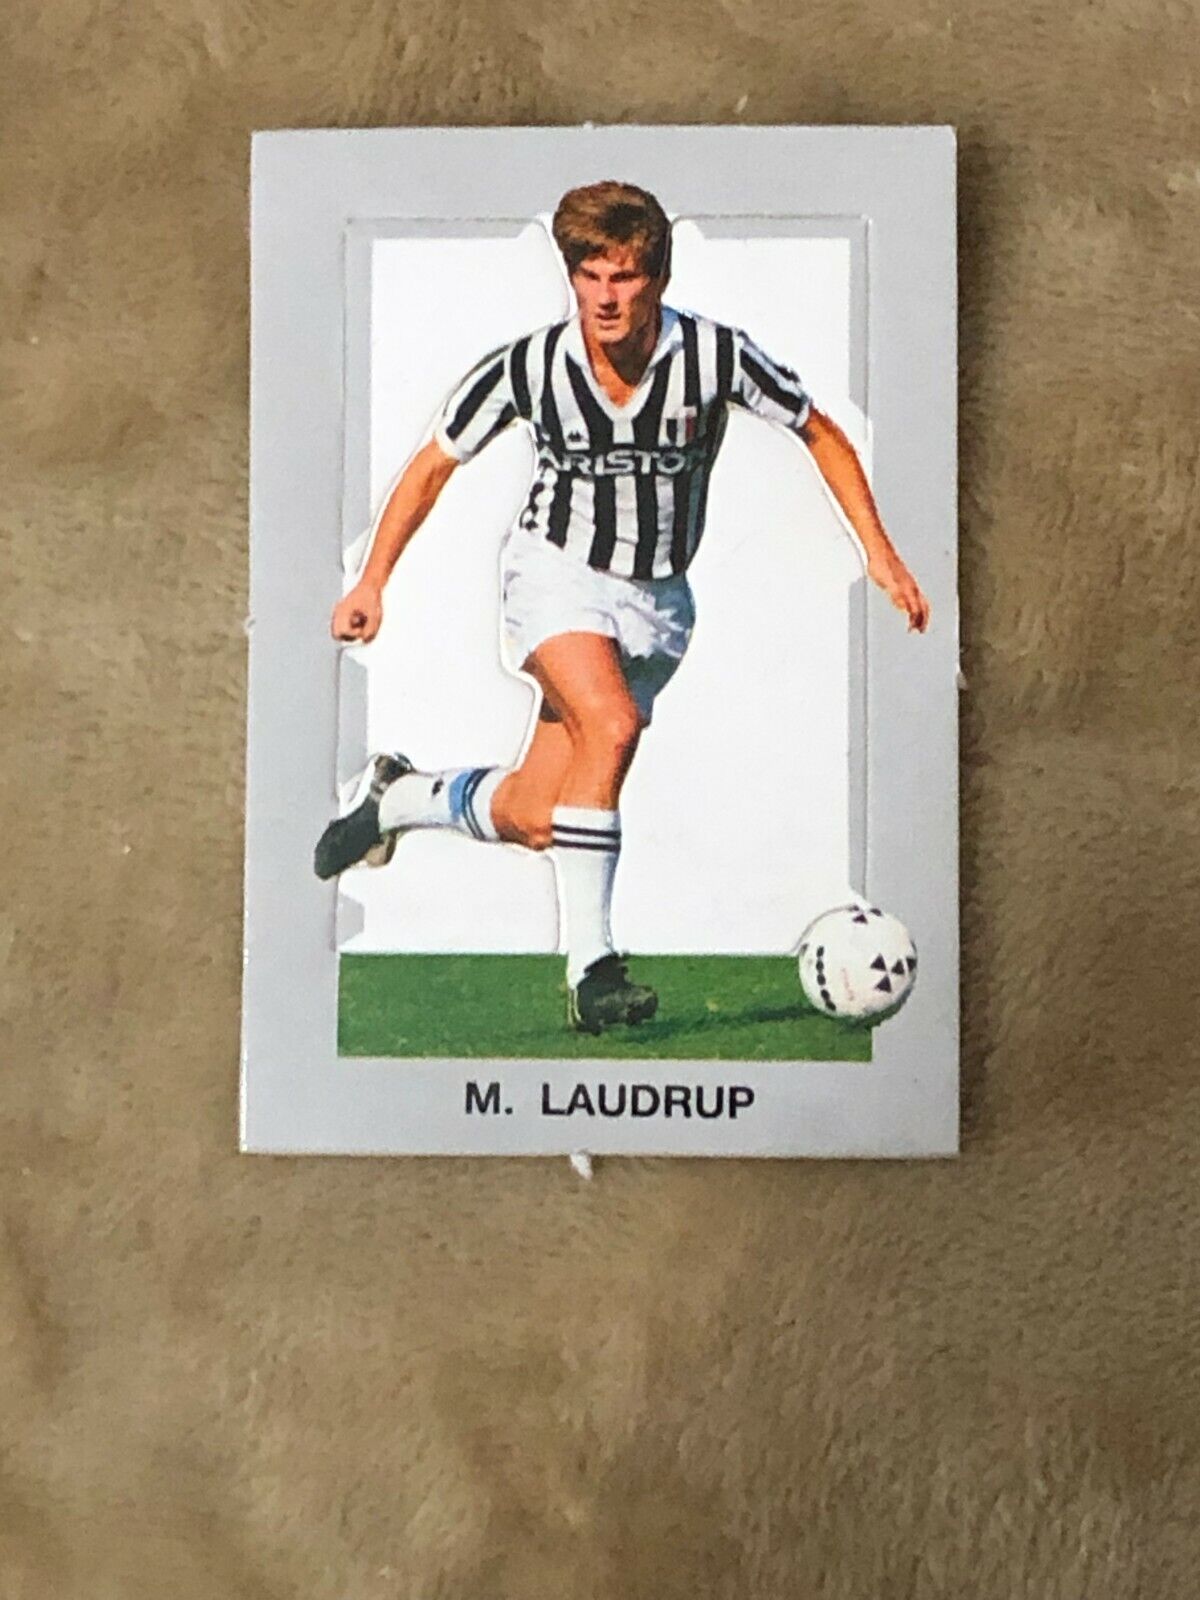 Figurina fustellata M. Laudrup Juventus sorpresa patatine anni 80 di Aa.vv.,  19